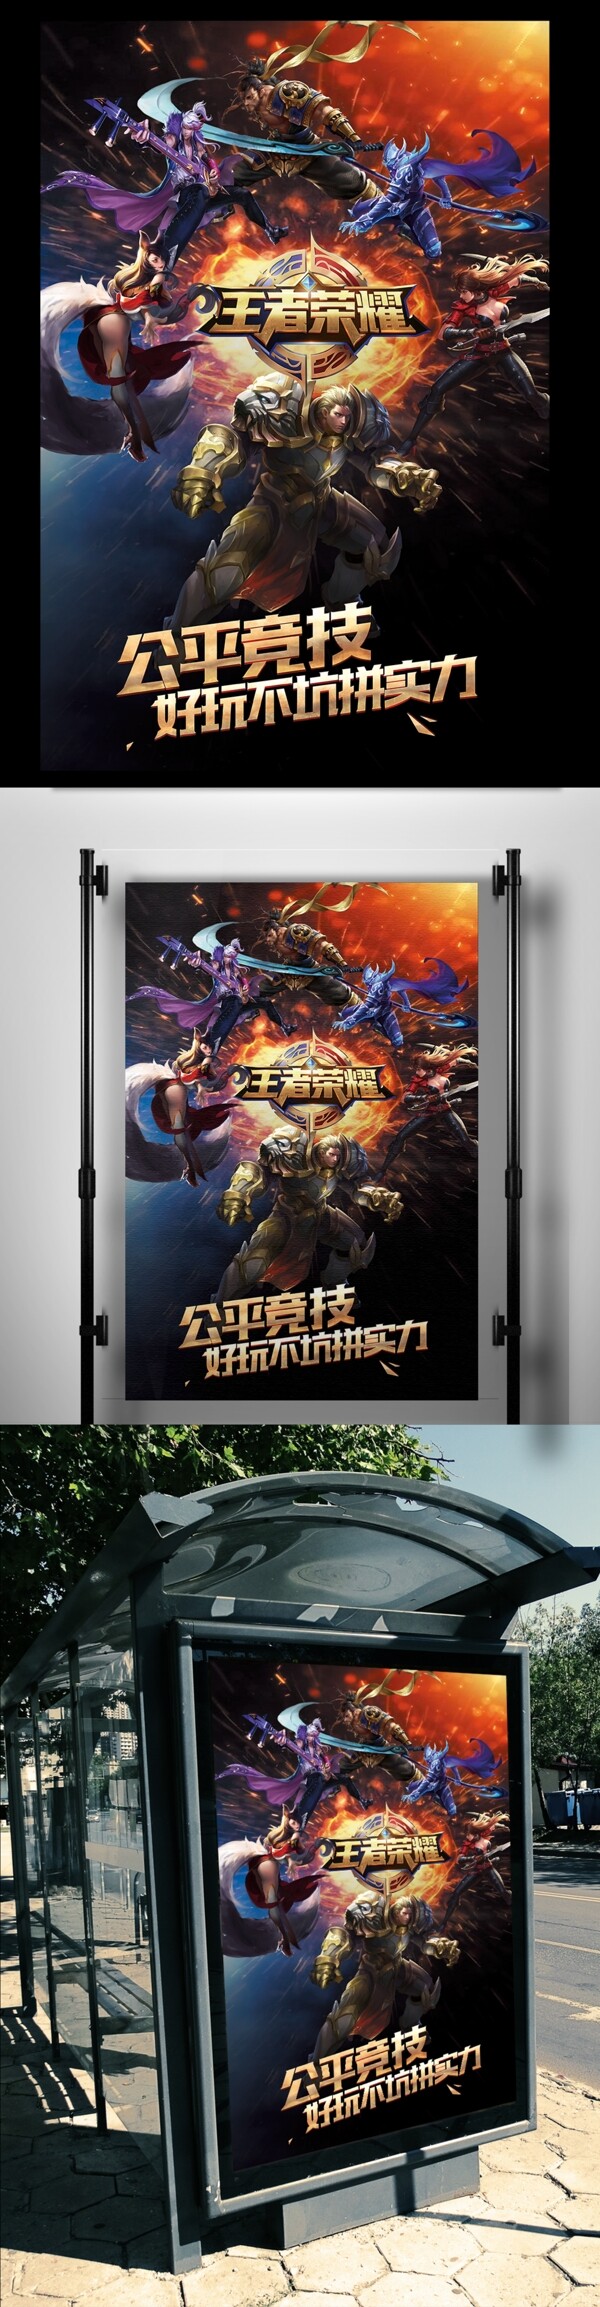 2017迷幻风王者荣耀广告海报